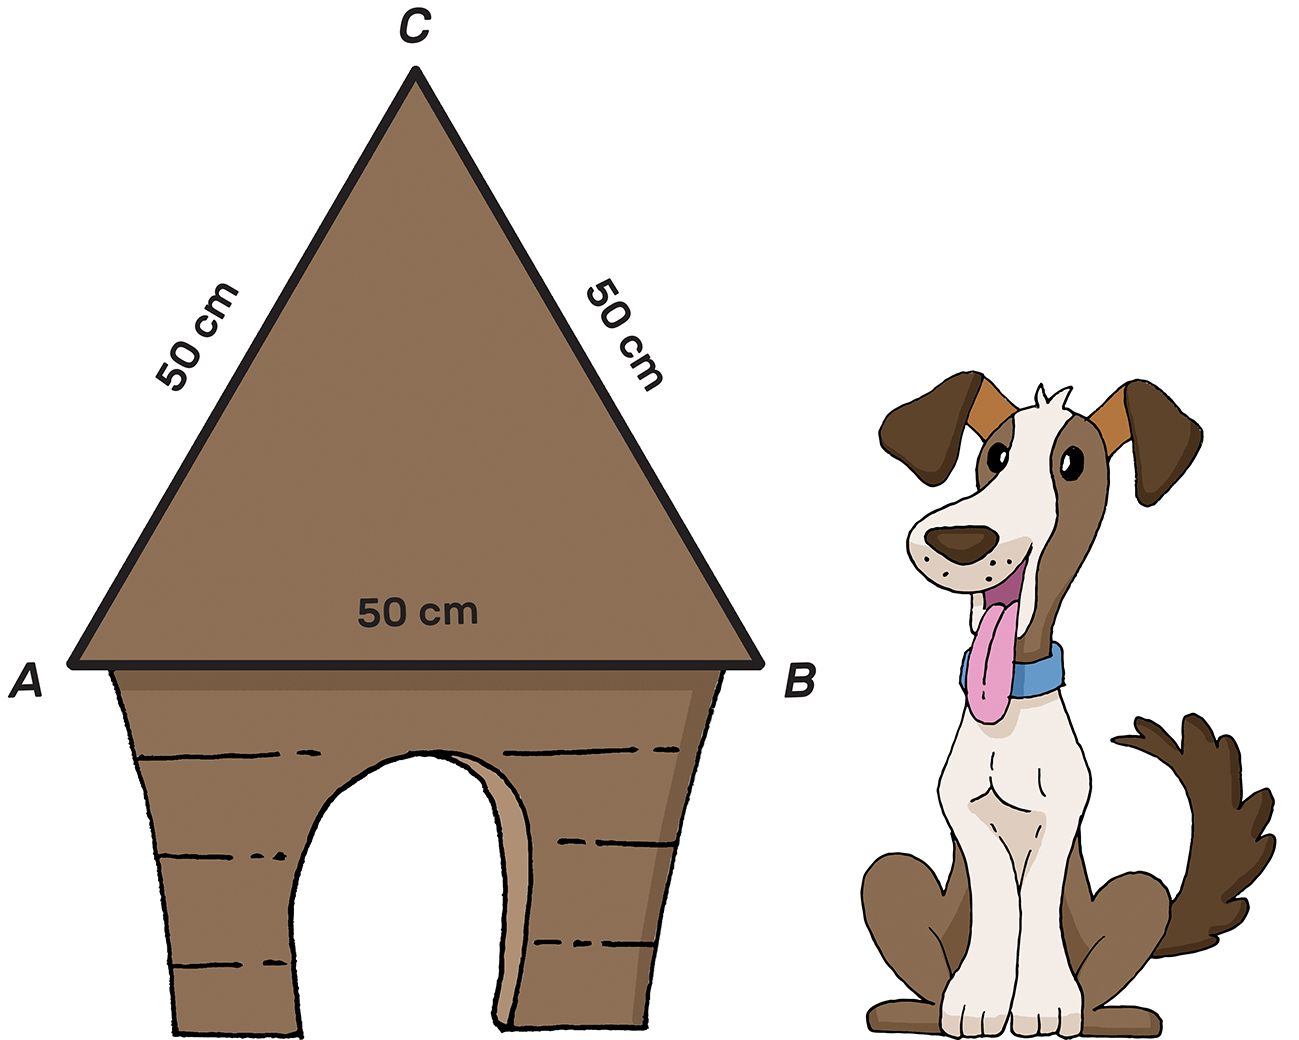 Kućica za psa ima krov oblika jednakostraničnog trokuta, ispred kućice sjedi pas